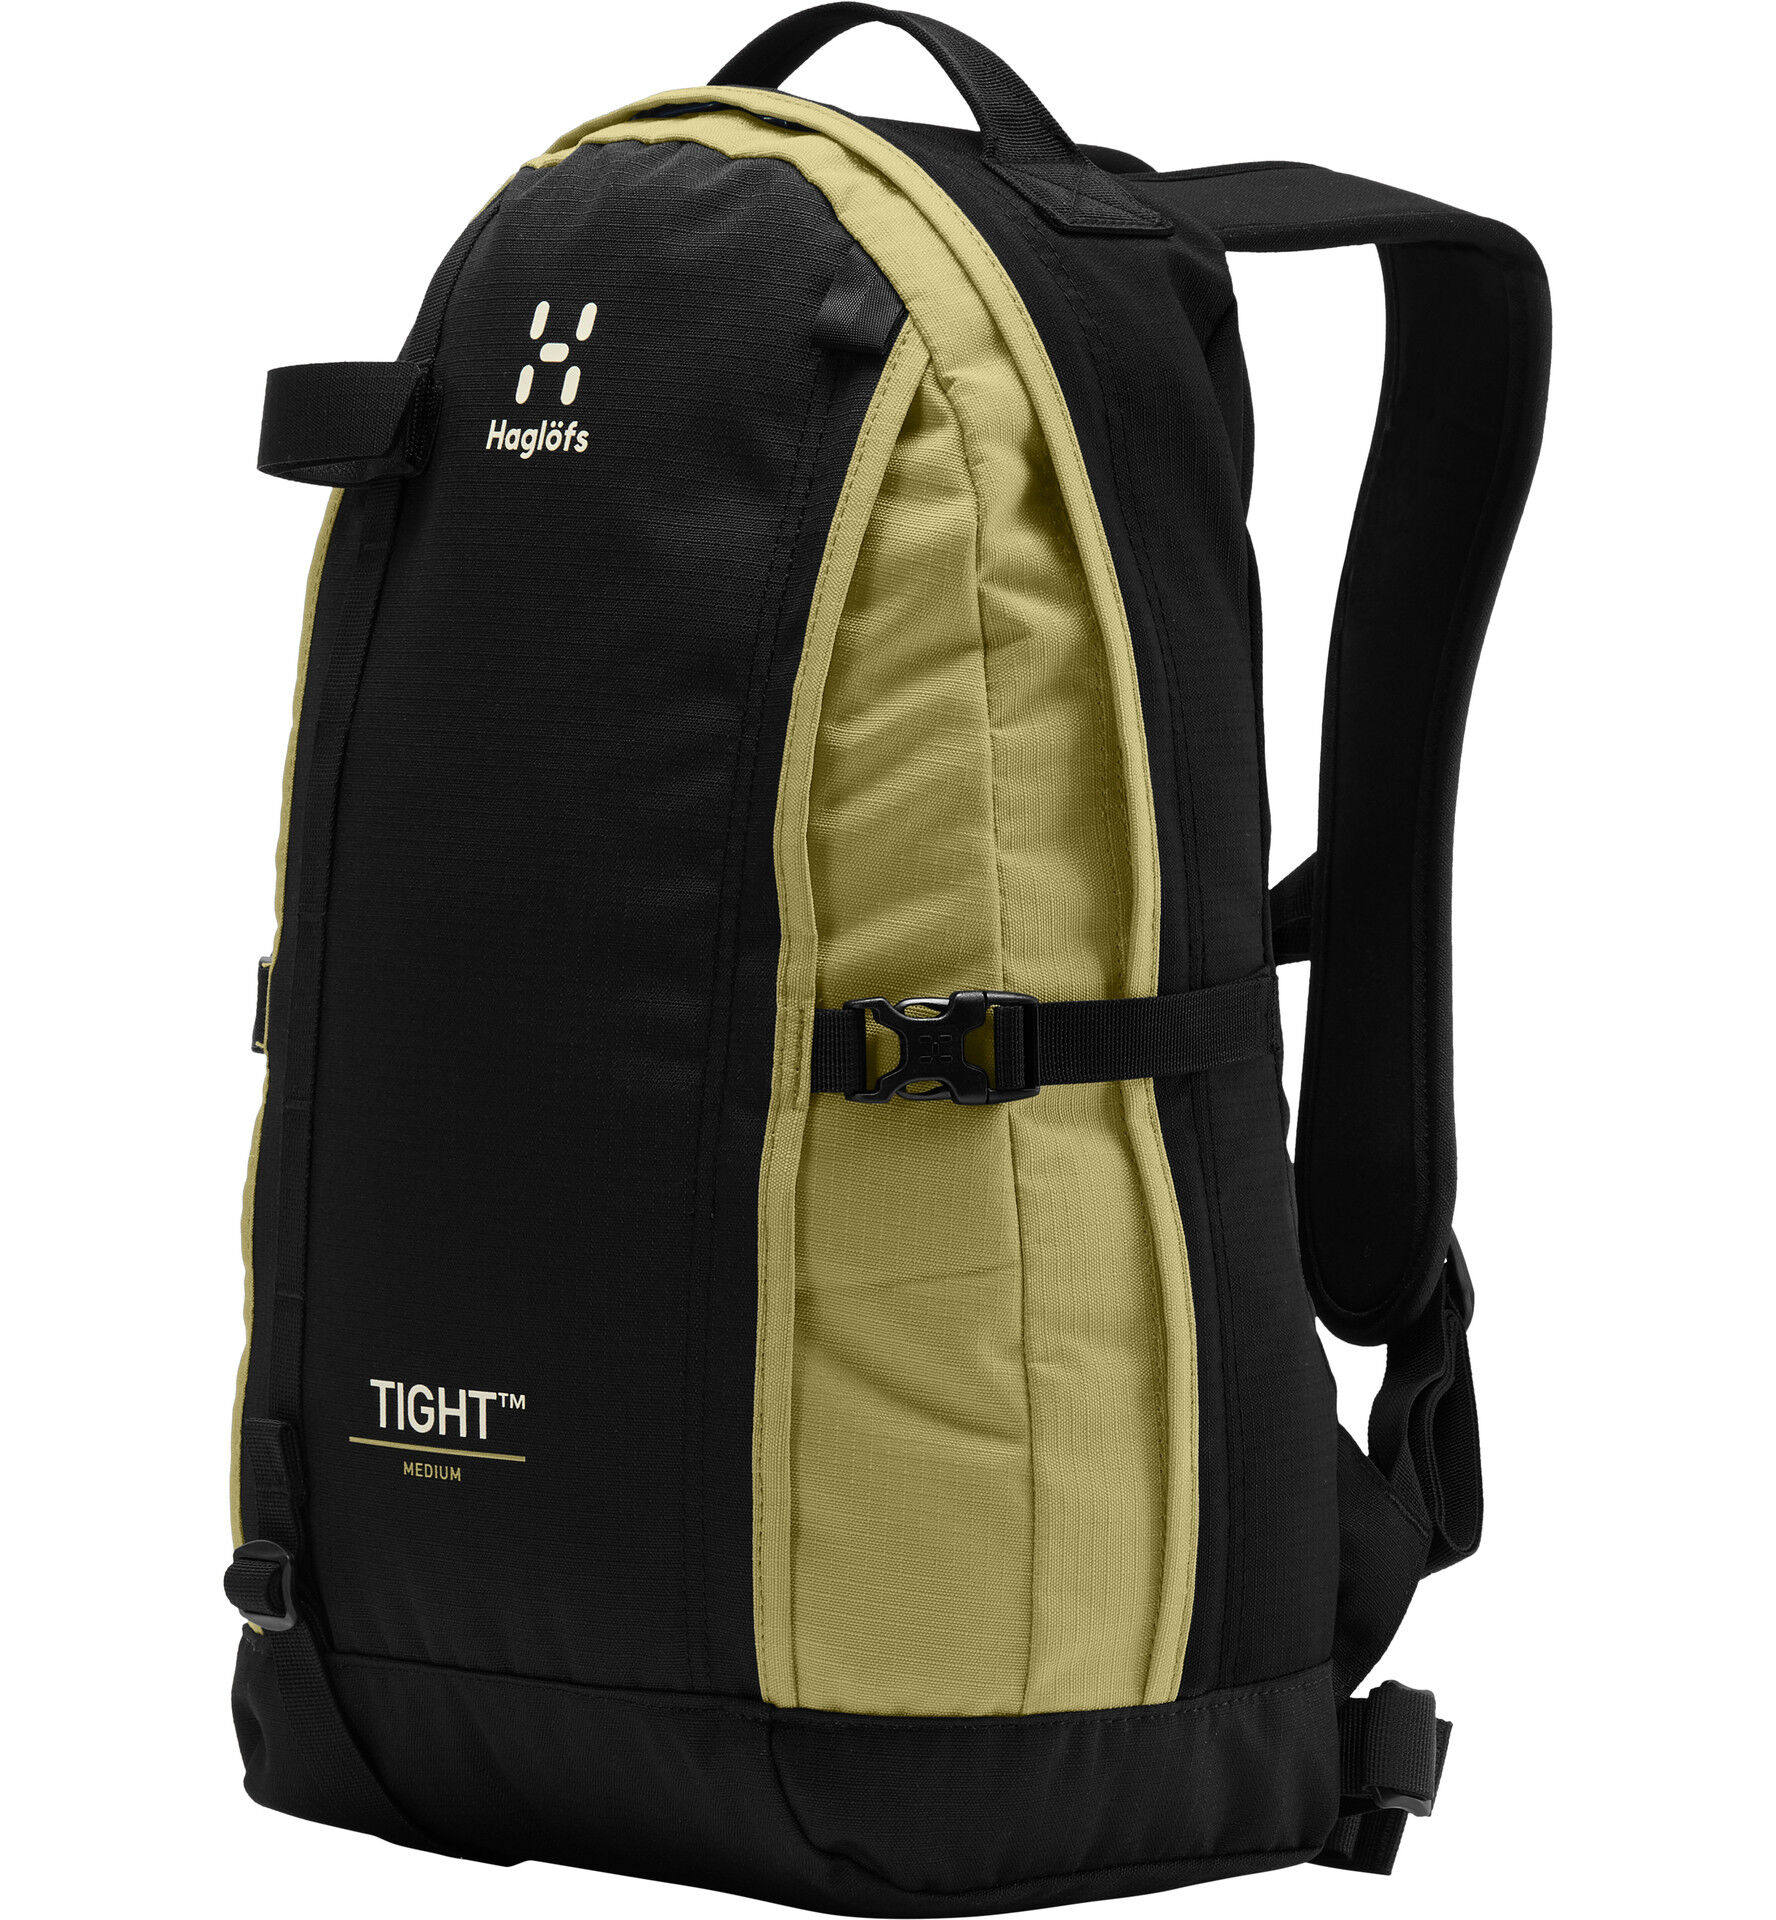 Haglöfs Tight Medium - Backpack